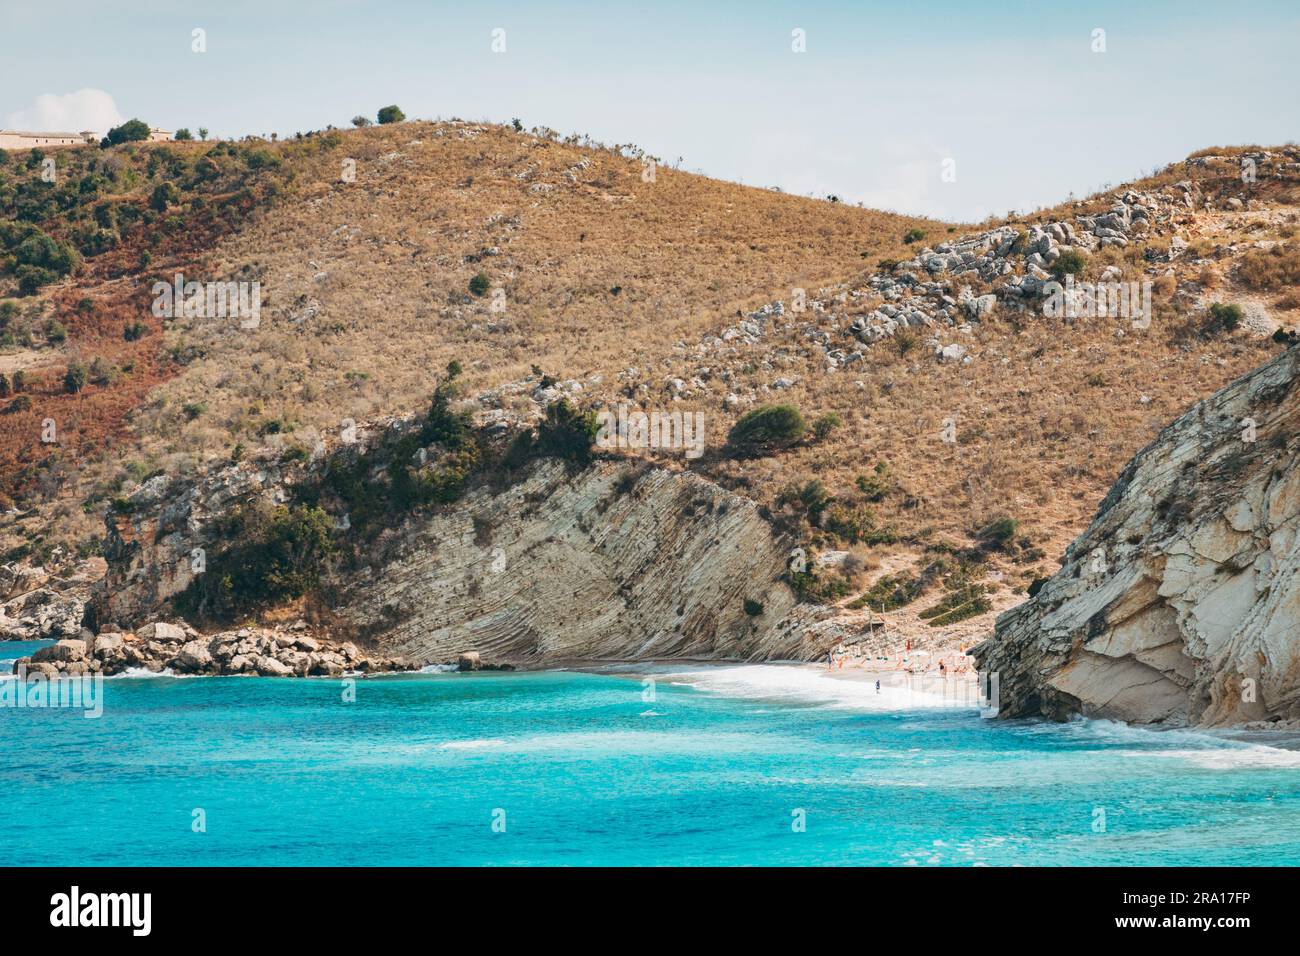 Una remota striscia di spiaggia con acque turchesi nella riviera albanese Foto Stock